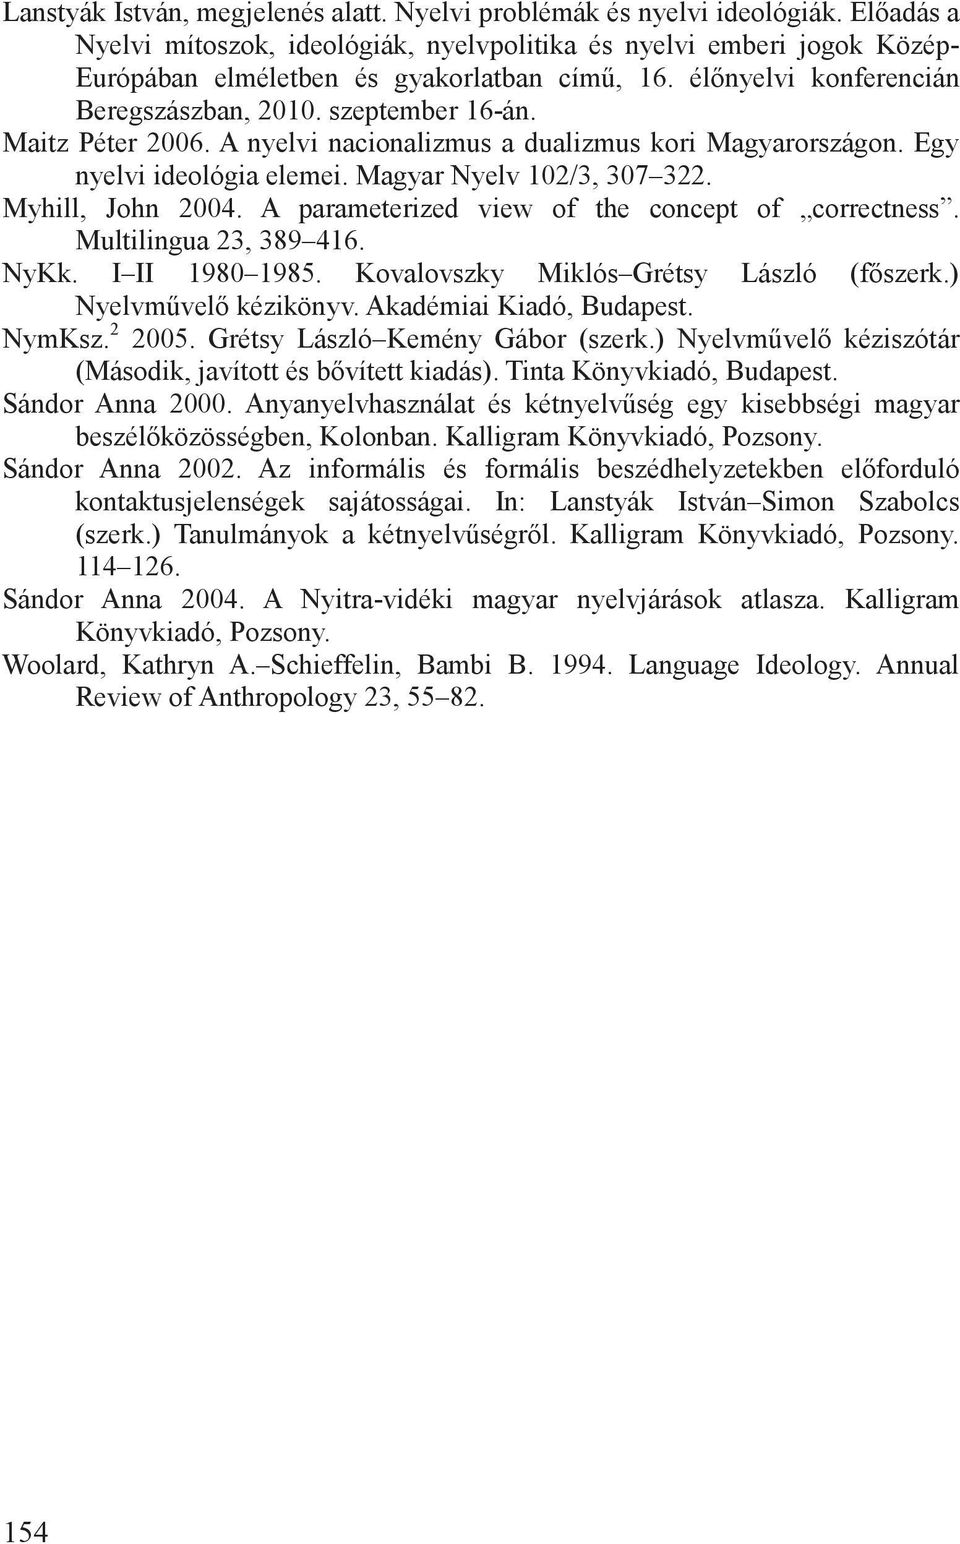 Maitz Péter 2006. A nyelvi nacionalizmus a dualizmus kori Magyarországon. Egy nyelvi ideológia elemei. Magyar Nyelv 102/3, 307 322. Myhill, John 2004.